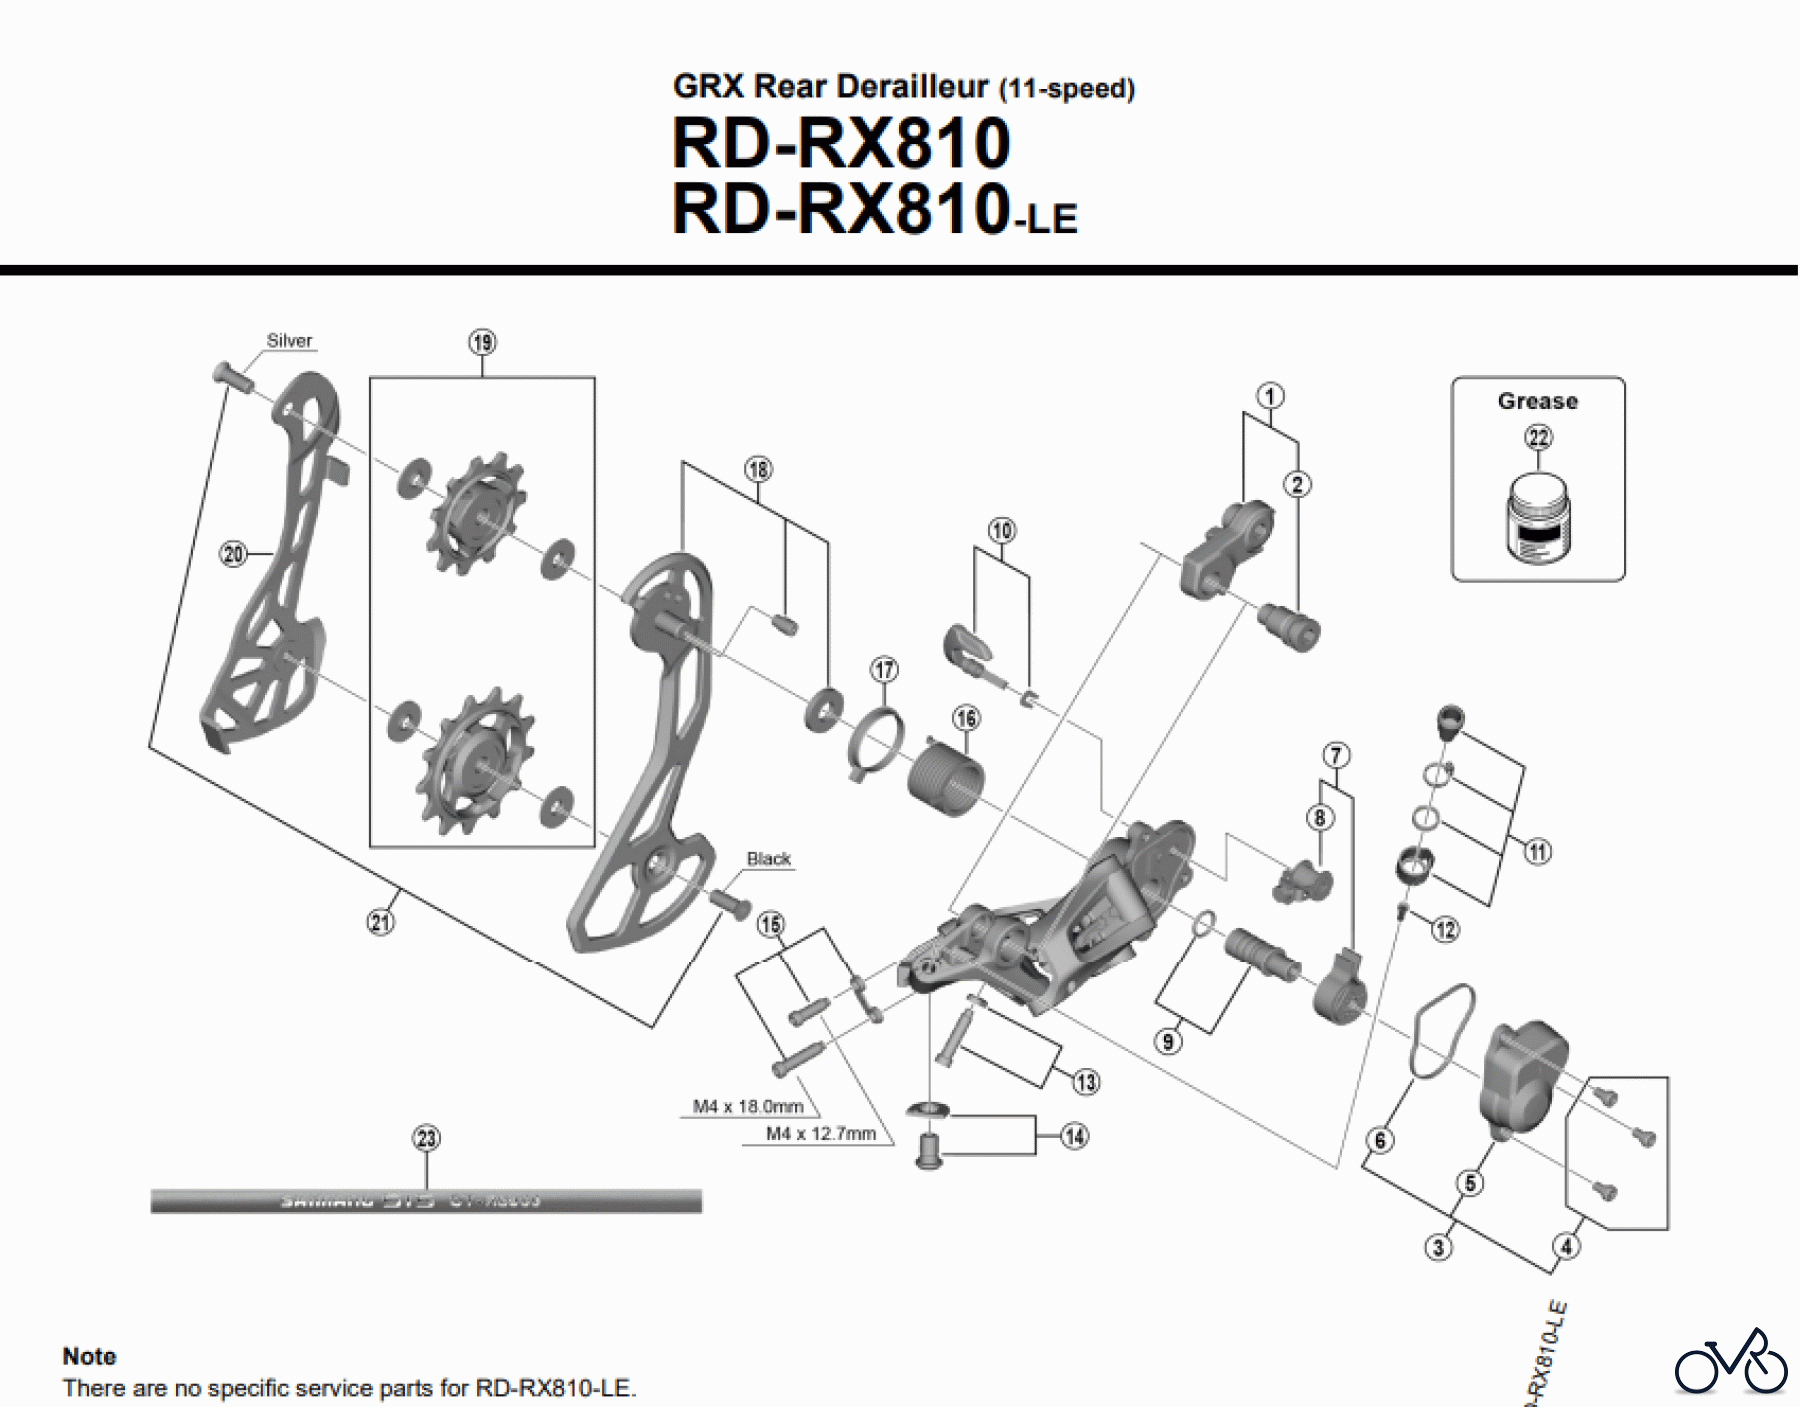  Shimano RD Rear Derailleur - Schaltwerk GRX Rear Derailleur (11-speed) RD-RX810 RD-RX810-LE